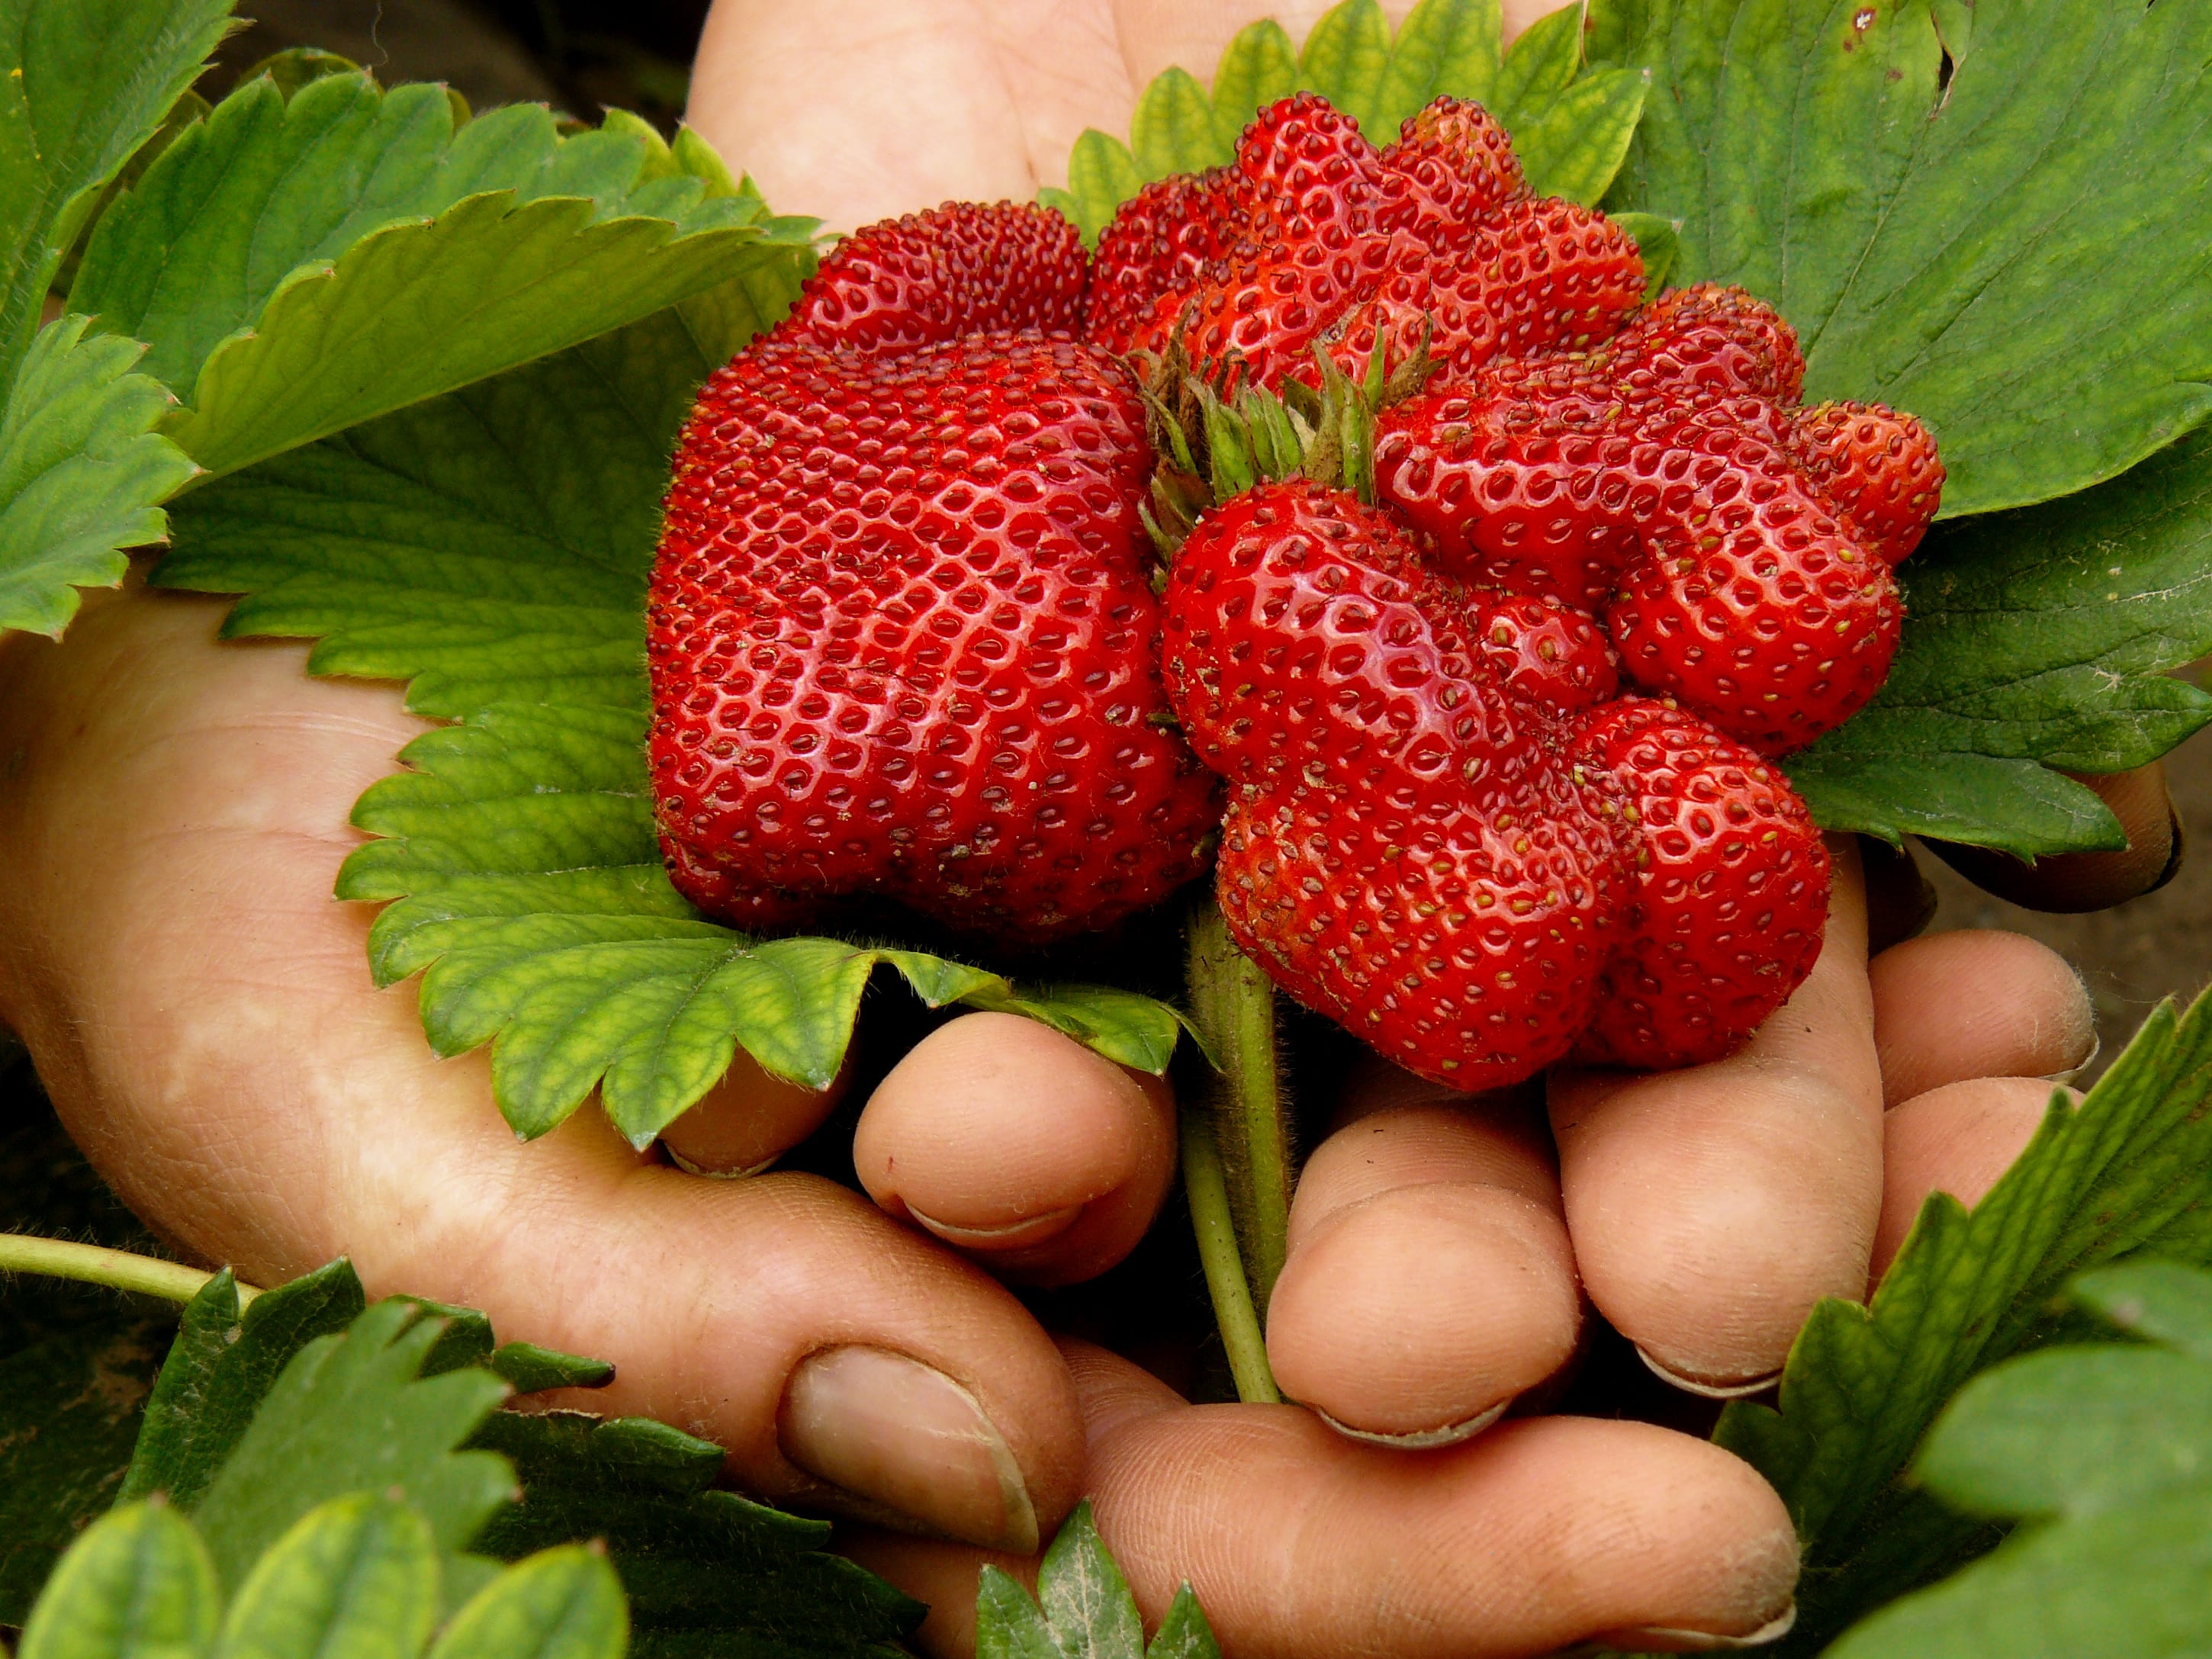 Händer som håller jordgubbar